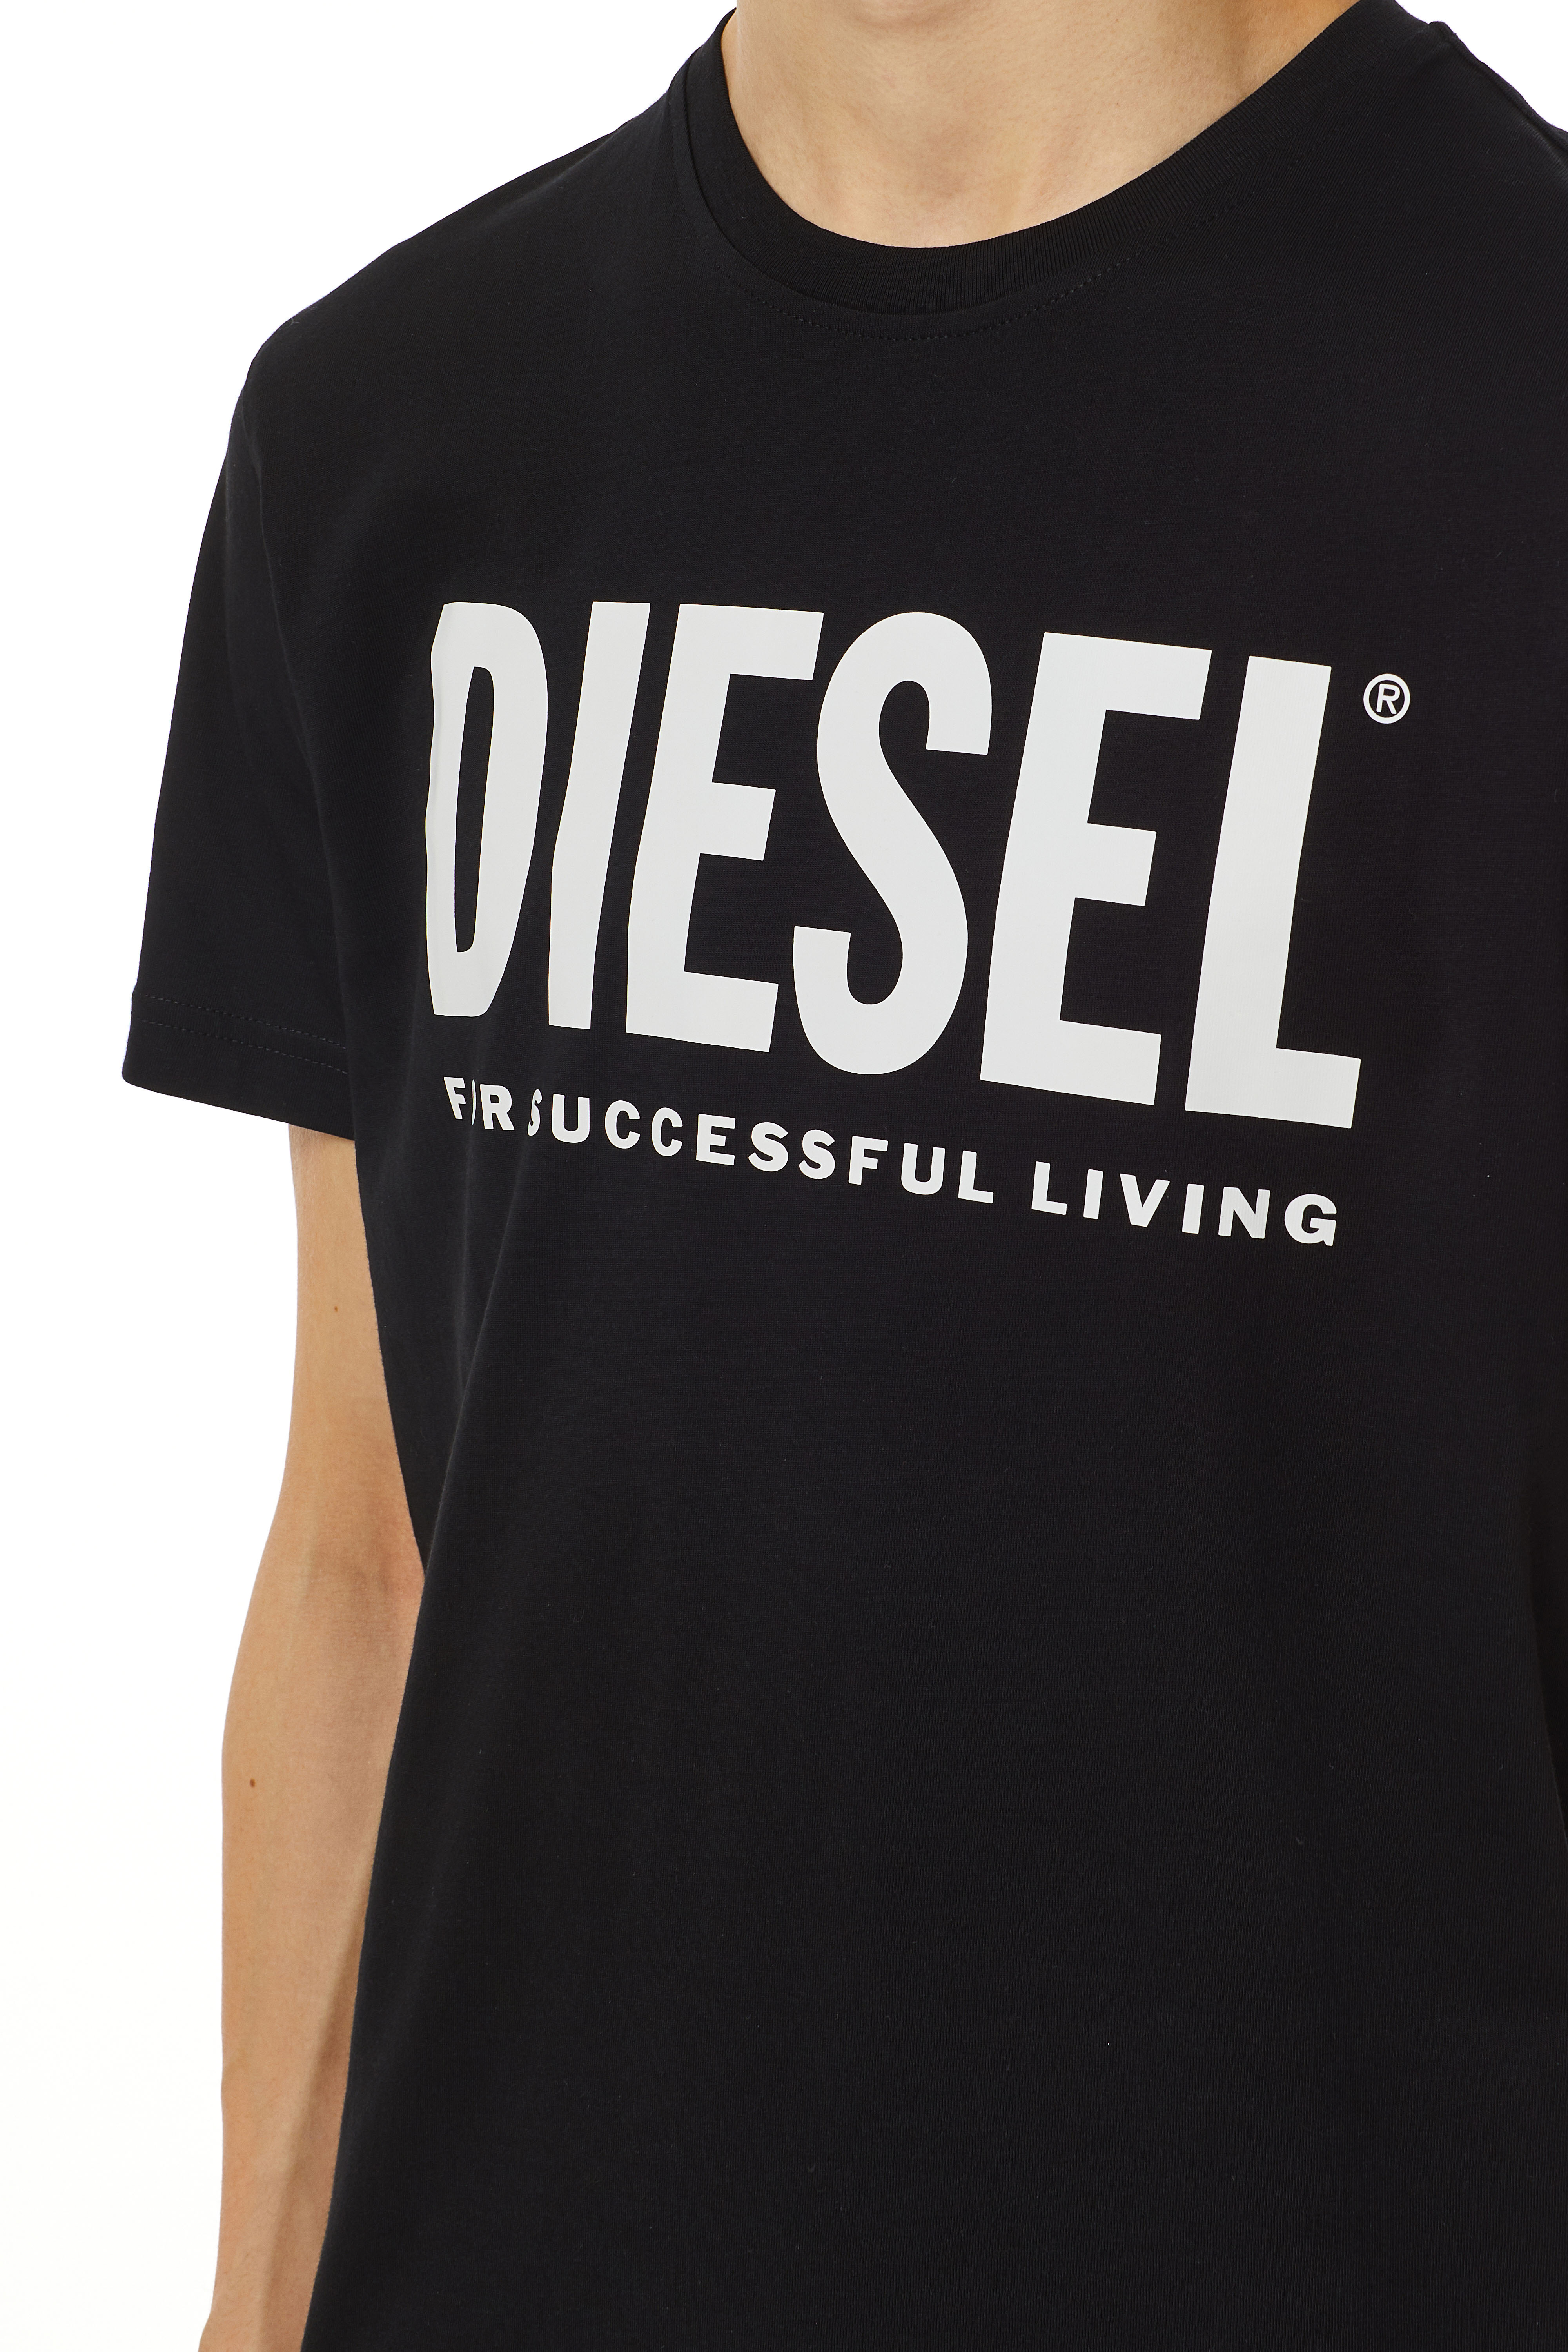 Diesel - T-DIEGOS-ECOLOGO, Black - Image 3